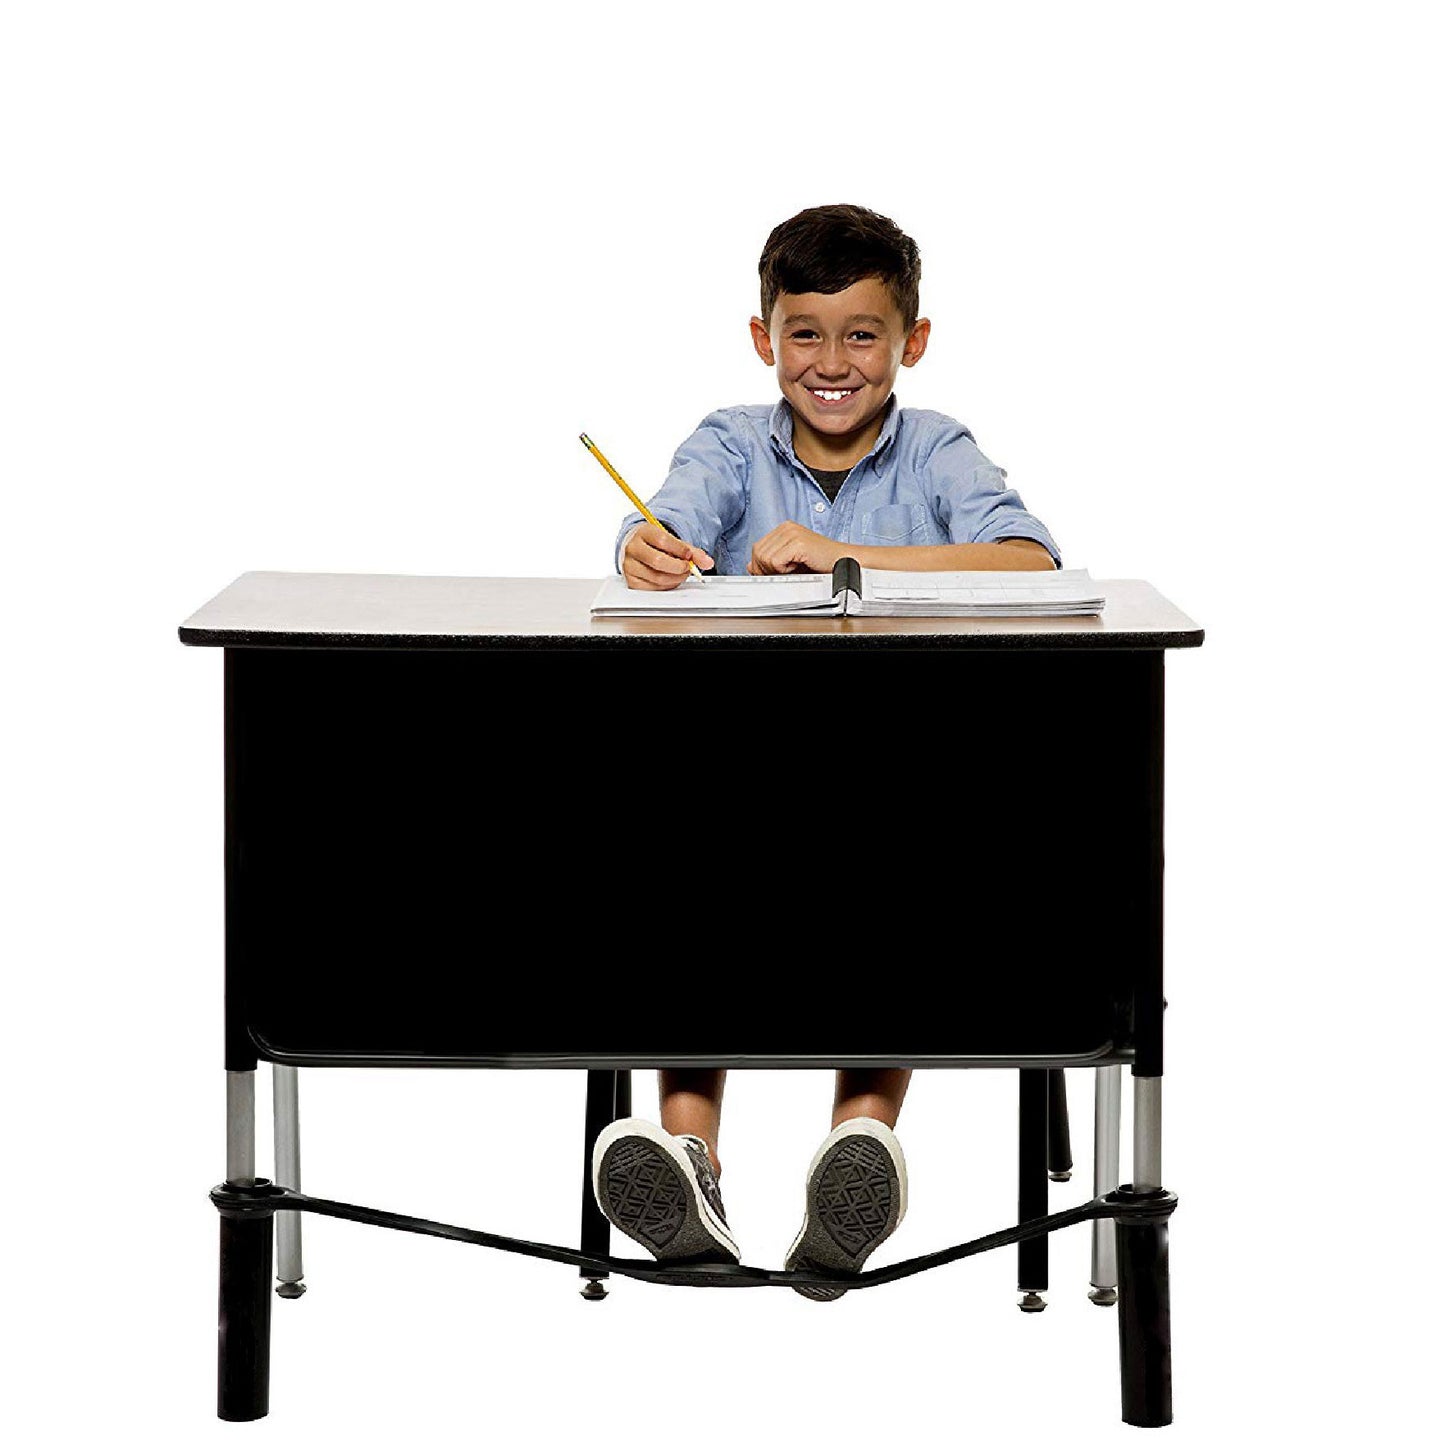 Black Tubes for Extra-Wide School Desks